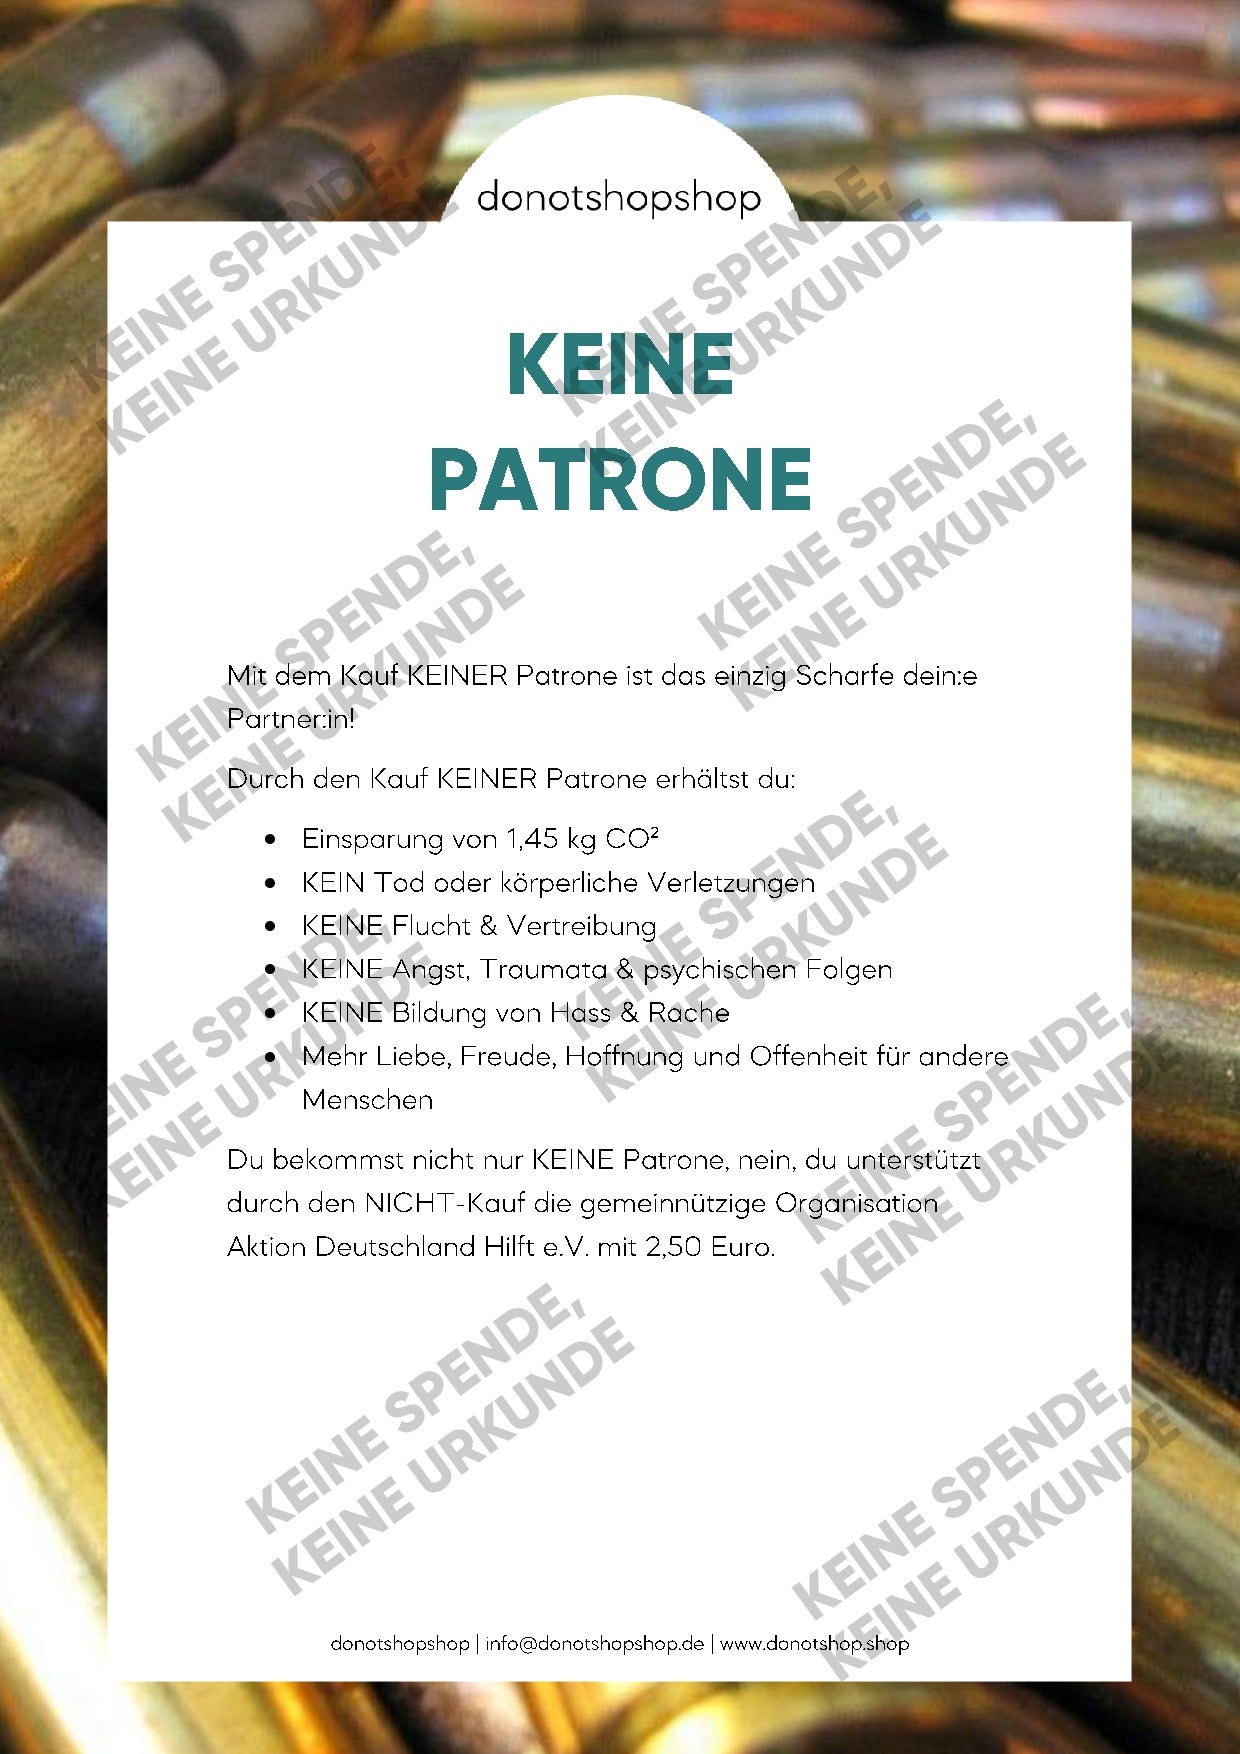 KEINE Patrone - donotshopshop